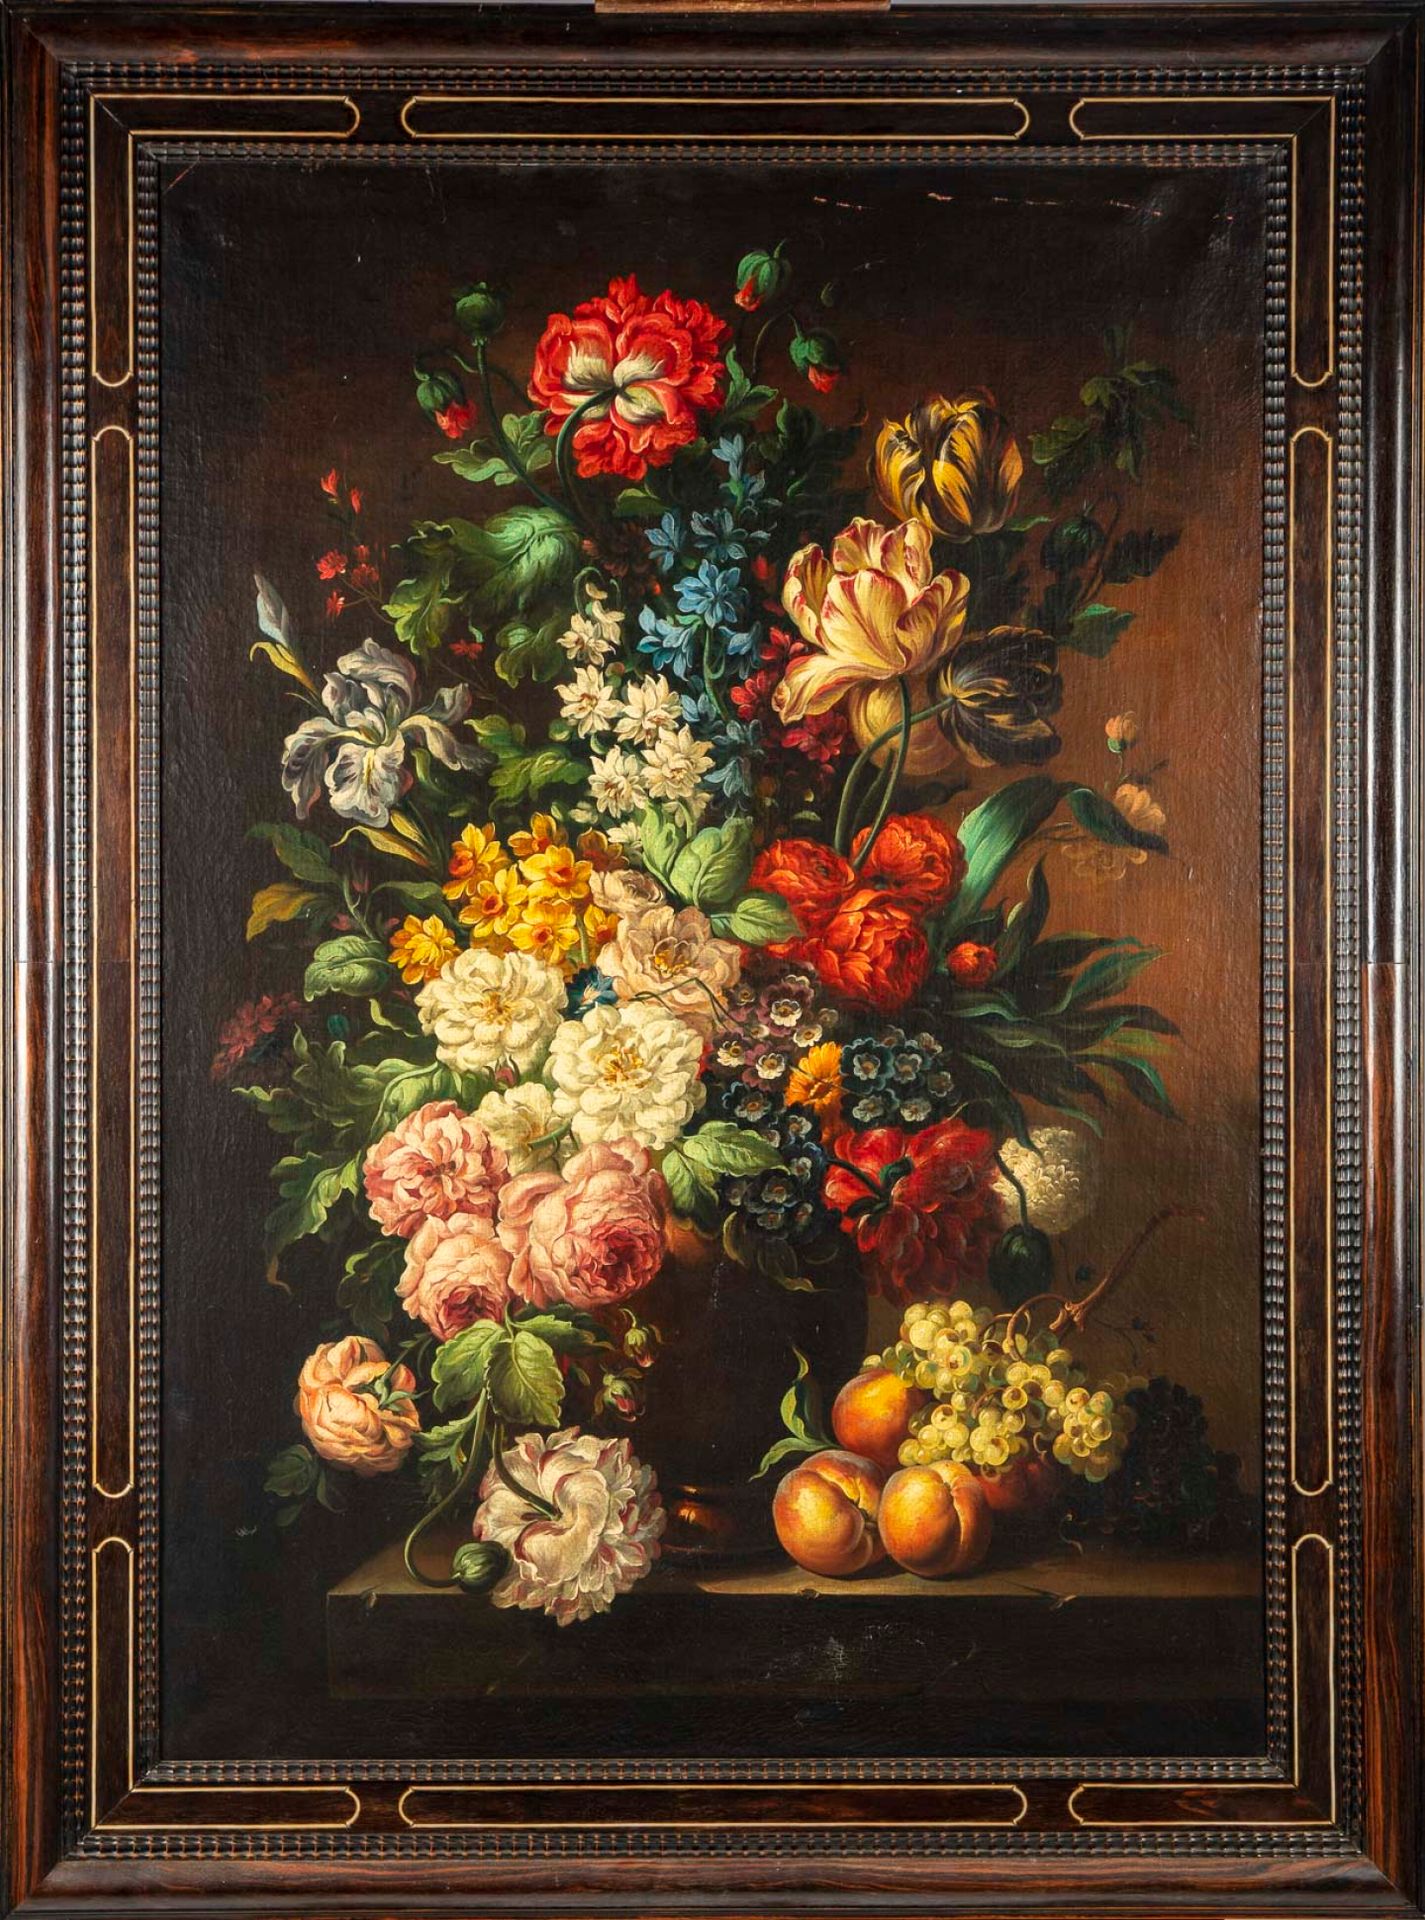 ECOLE HOLLANDAISE XIXe Siglo XIX ESCUELA DE HOLANDA

Ramo de flores en un entabl&hellip;